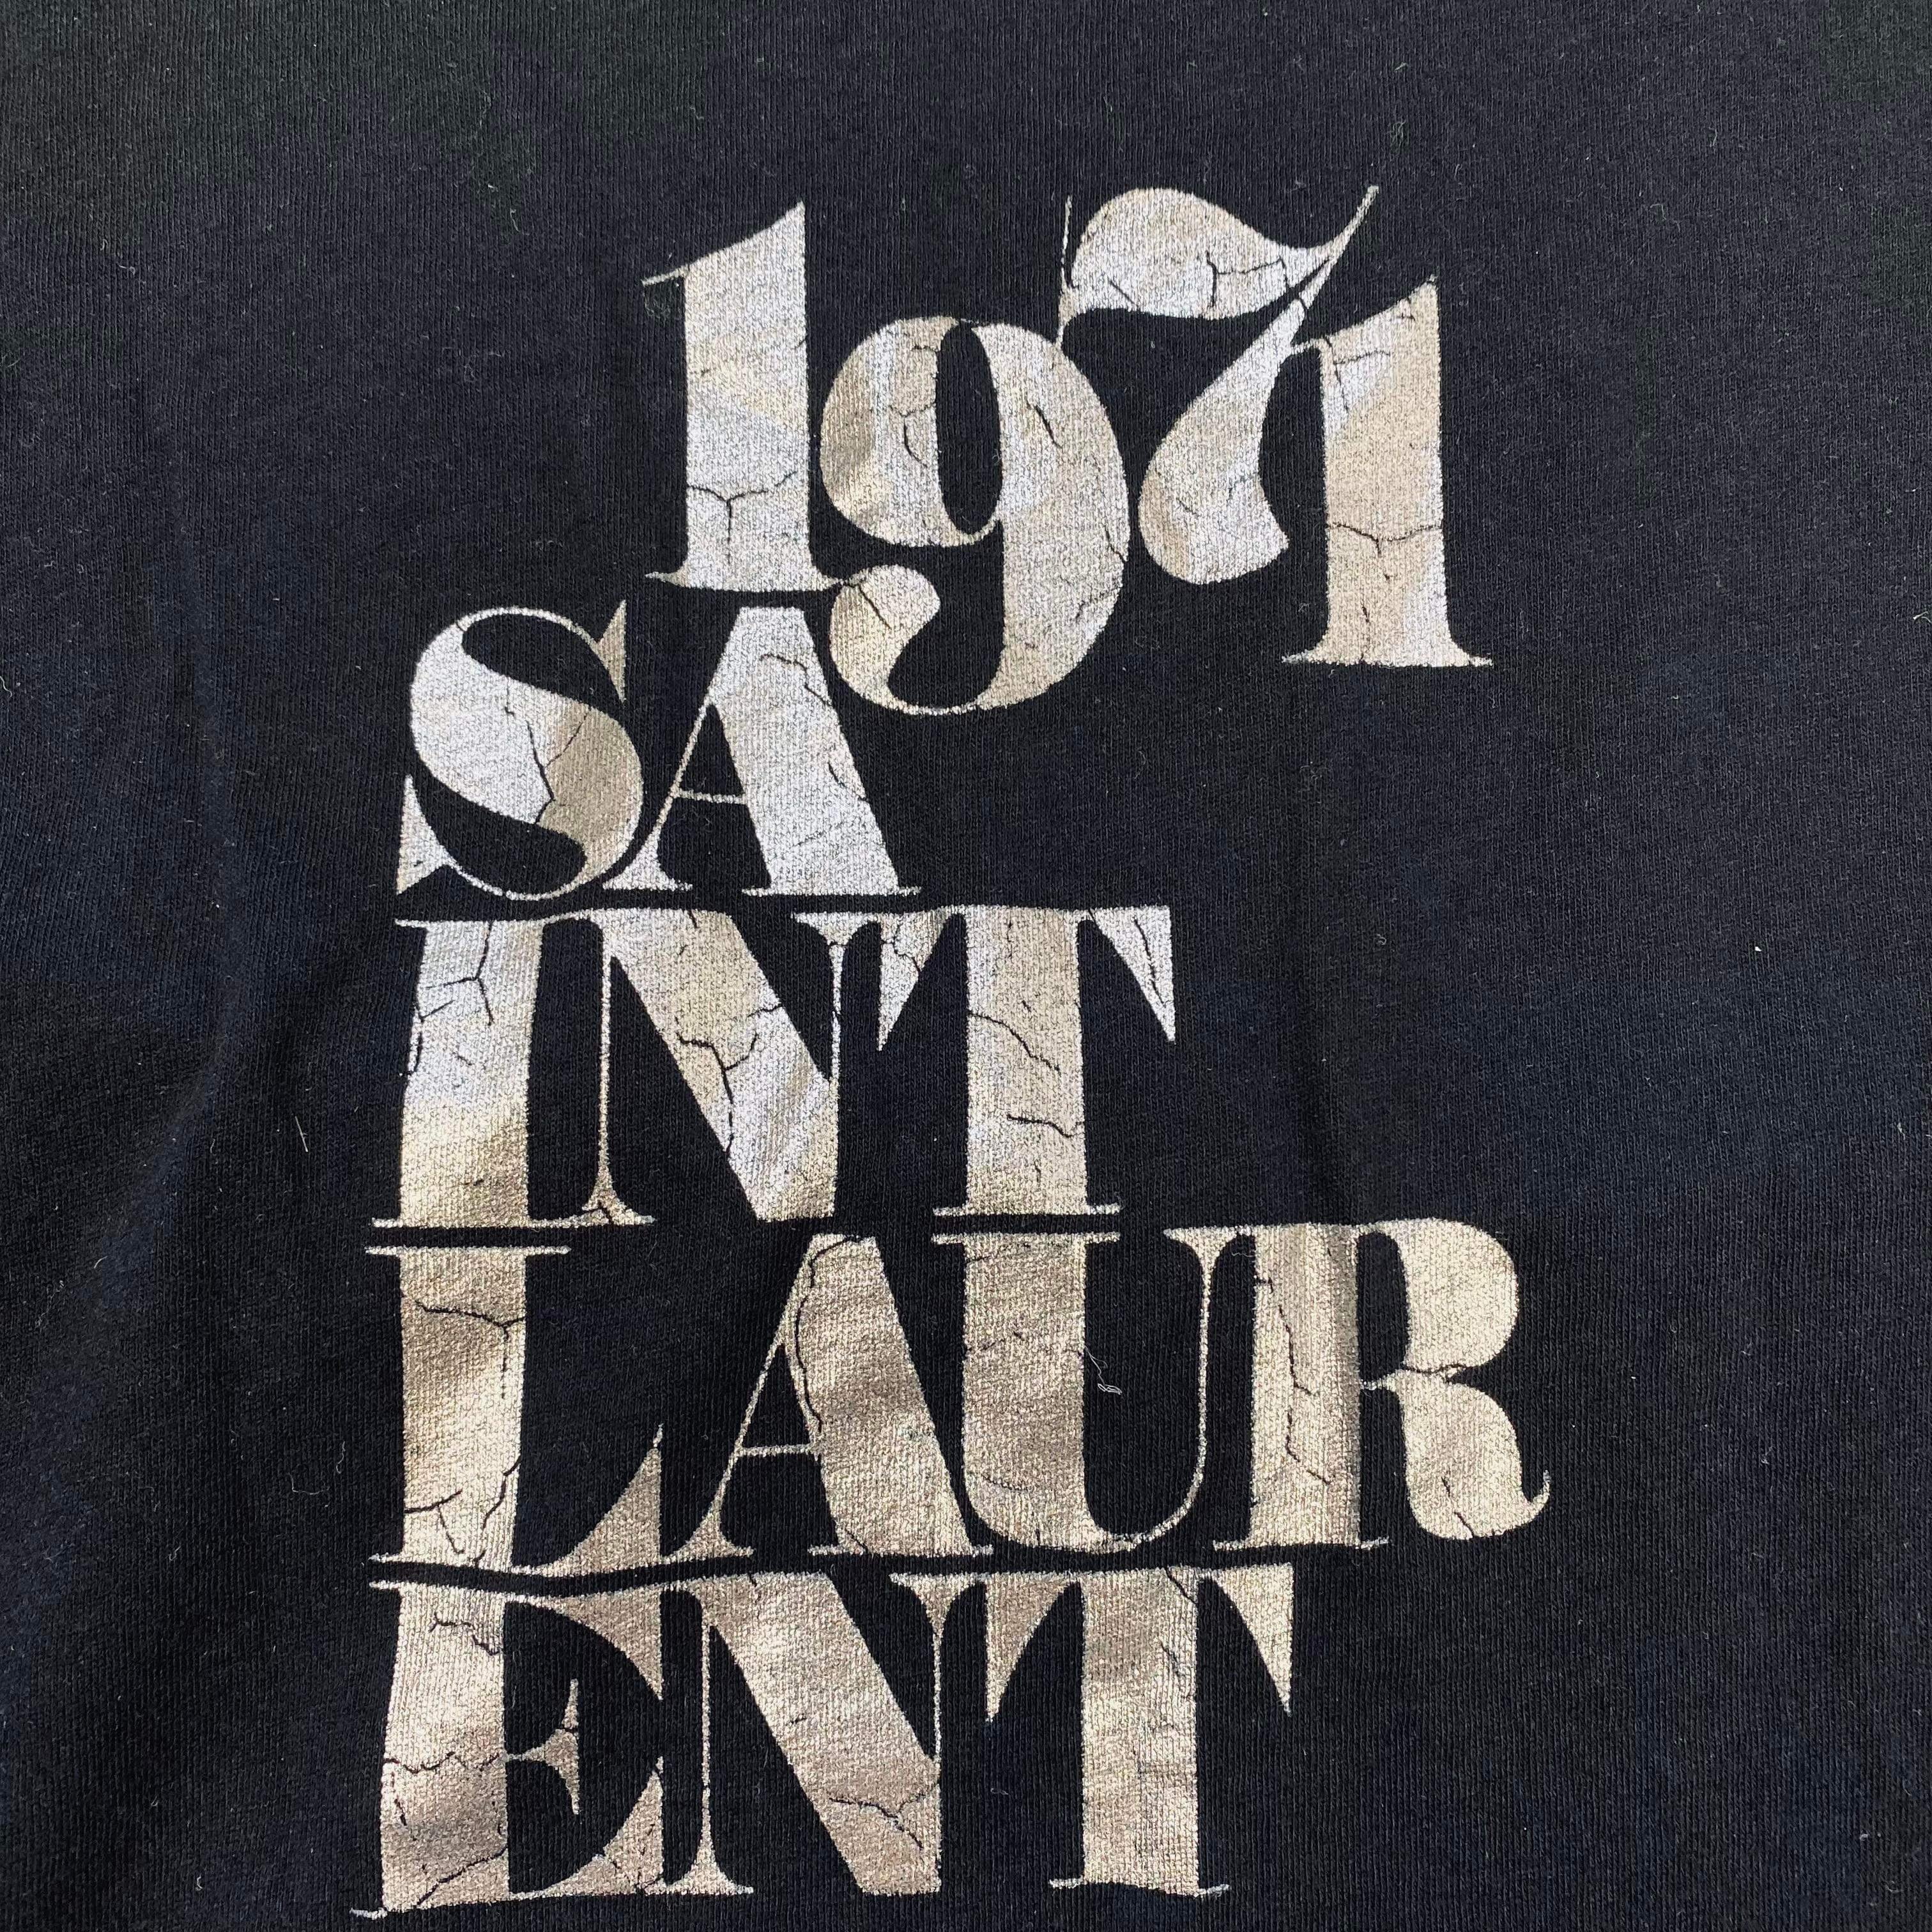 Saint Laurent Graphic T-Shirt